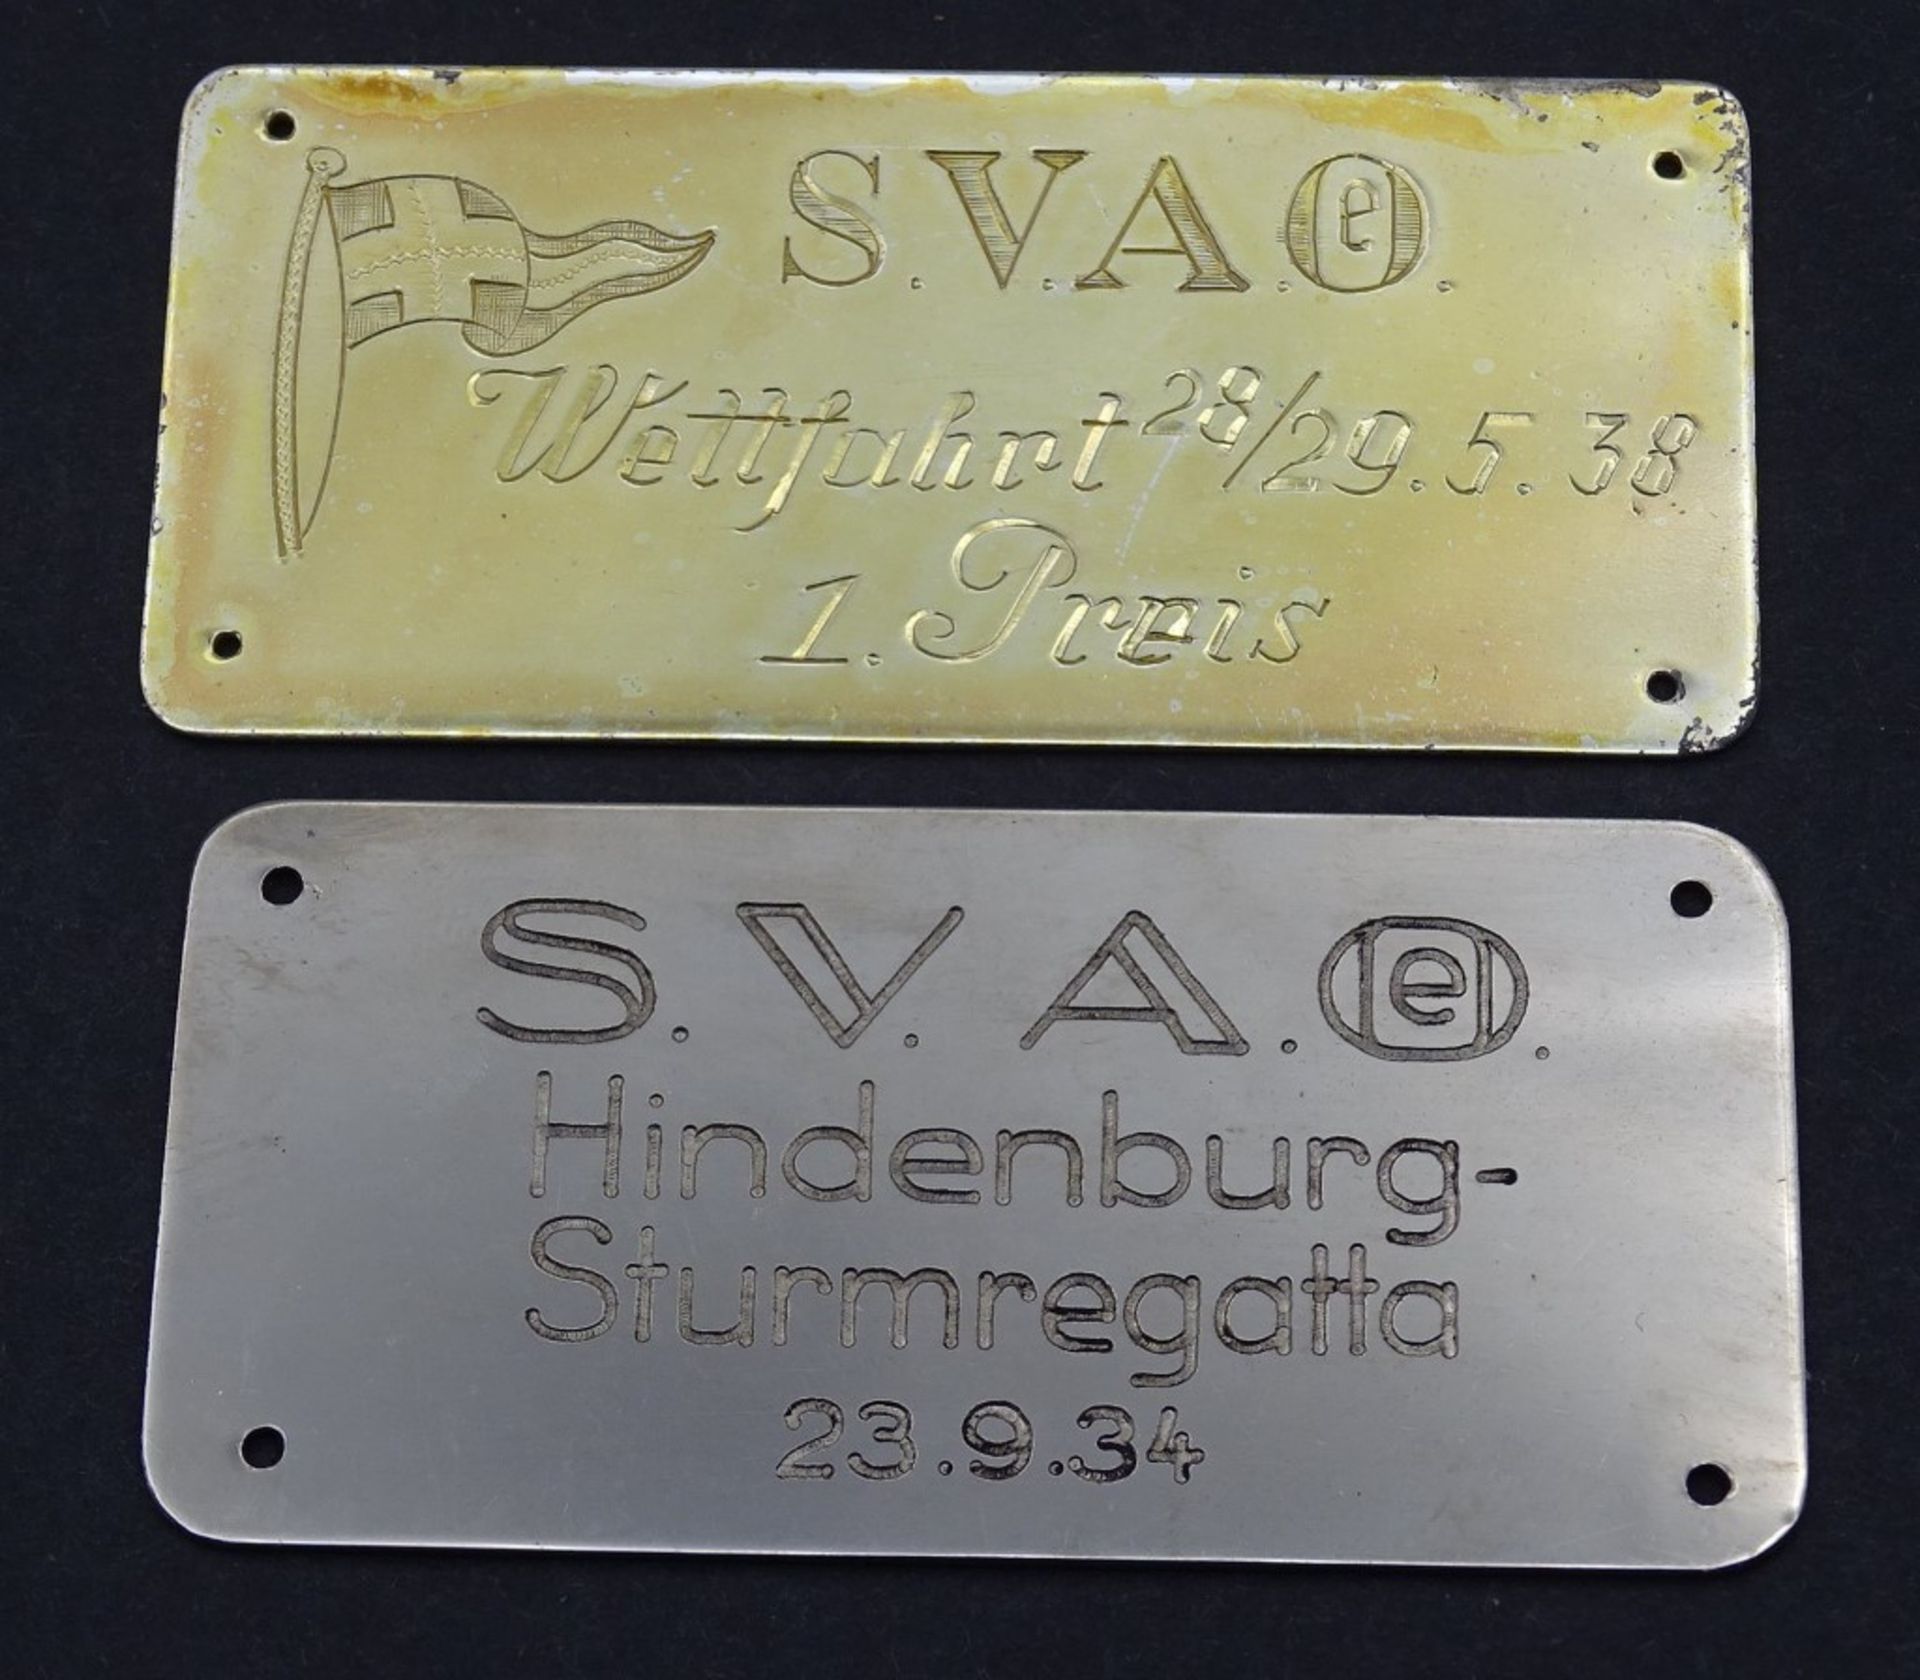 Zwei Metall Plaketten S.V.A.O. Wettfahrt 1938 / Hindenburg Sturmregatta 1934 (S.V.A.O - Segler